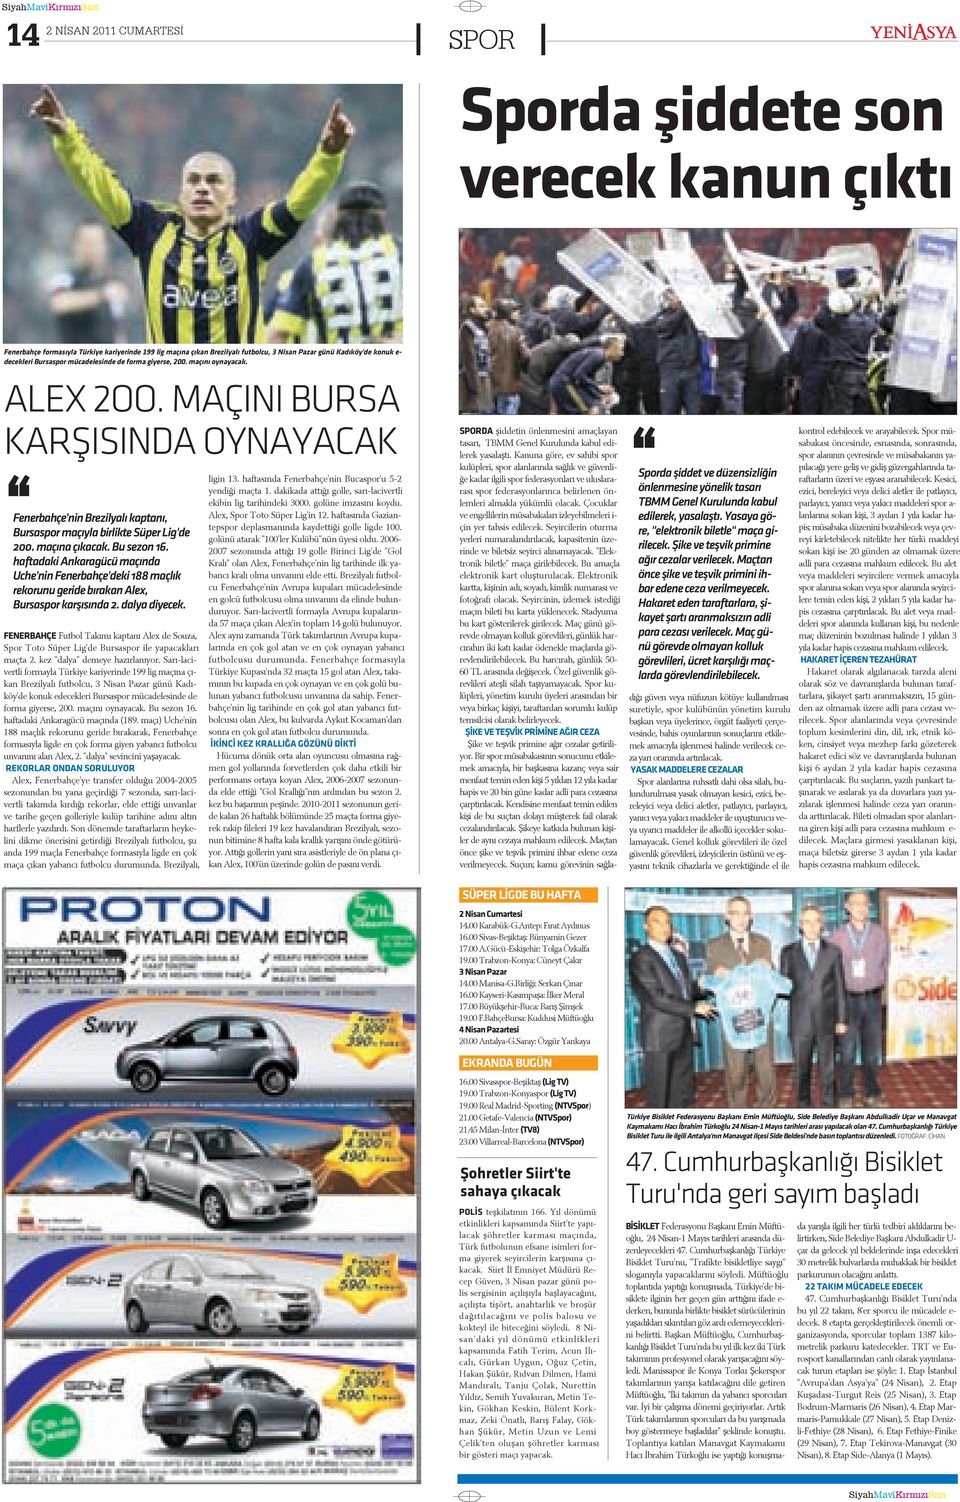 MAÇINI BURSA KARÞISINDA OYNAYACAK Fenerbahçe'nin Brezilyalý kaptaný, Bursaspor maçýyla birlikte Süper Lig'de 200. maçýna çýkacak. Bu sezon 16.